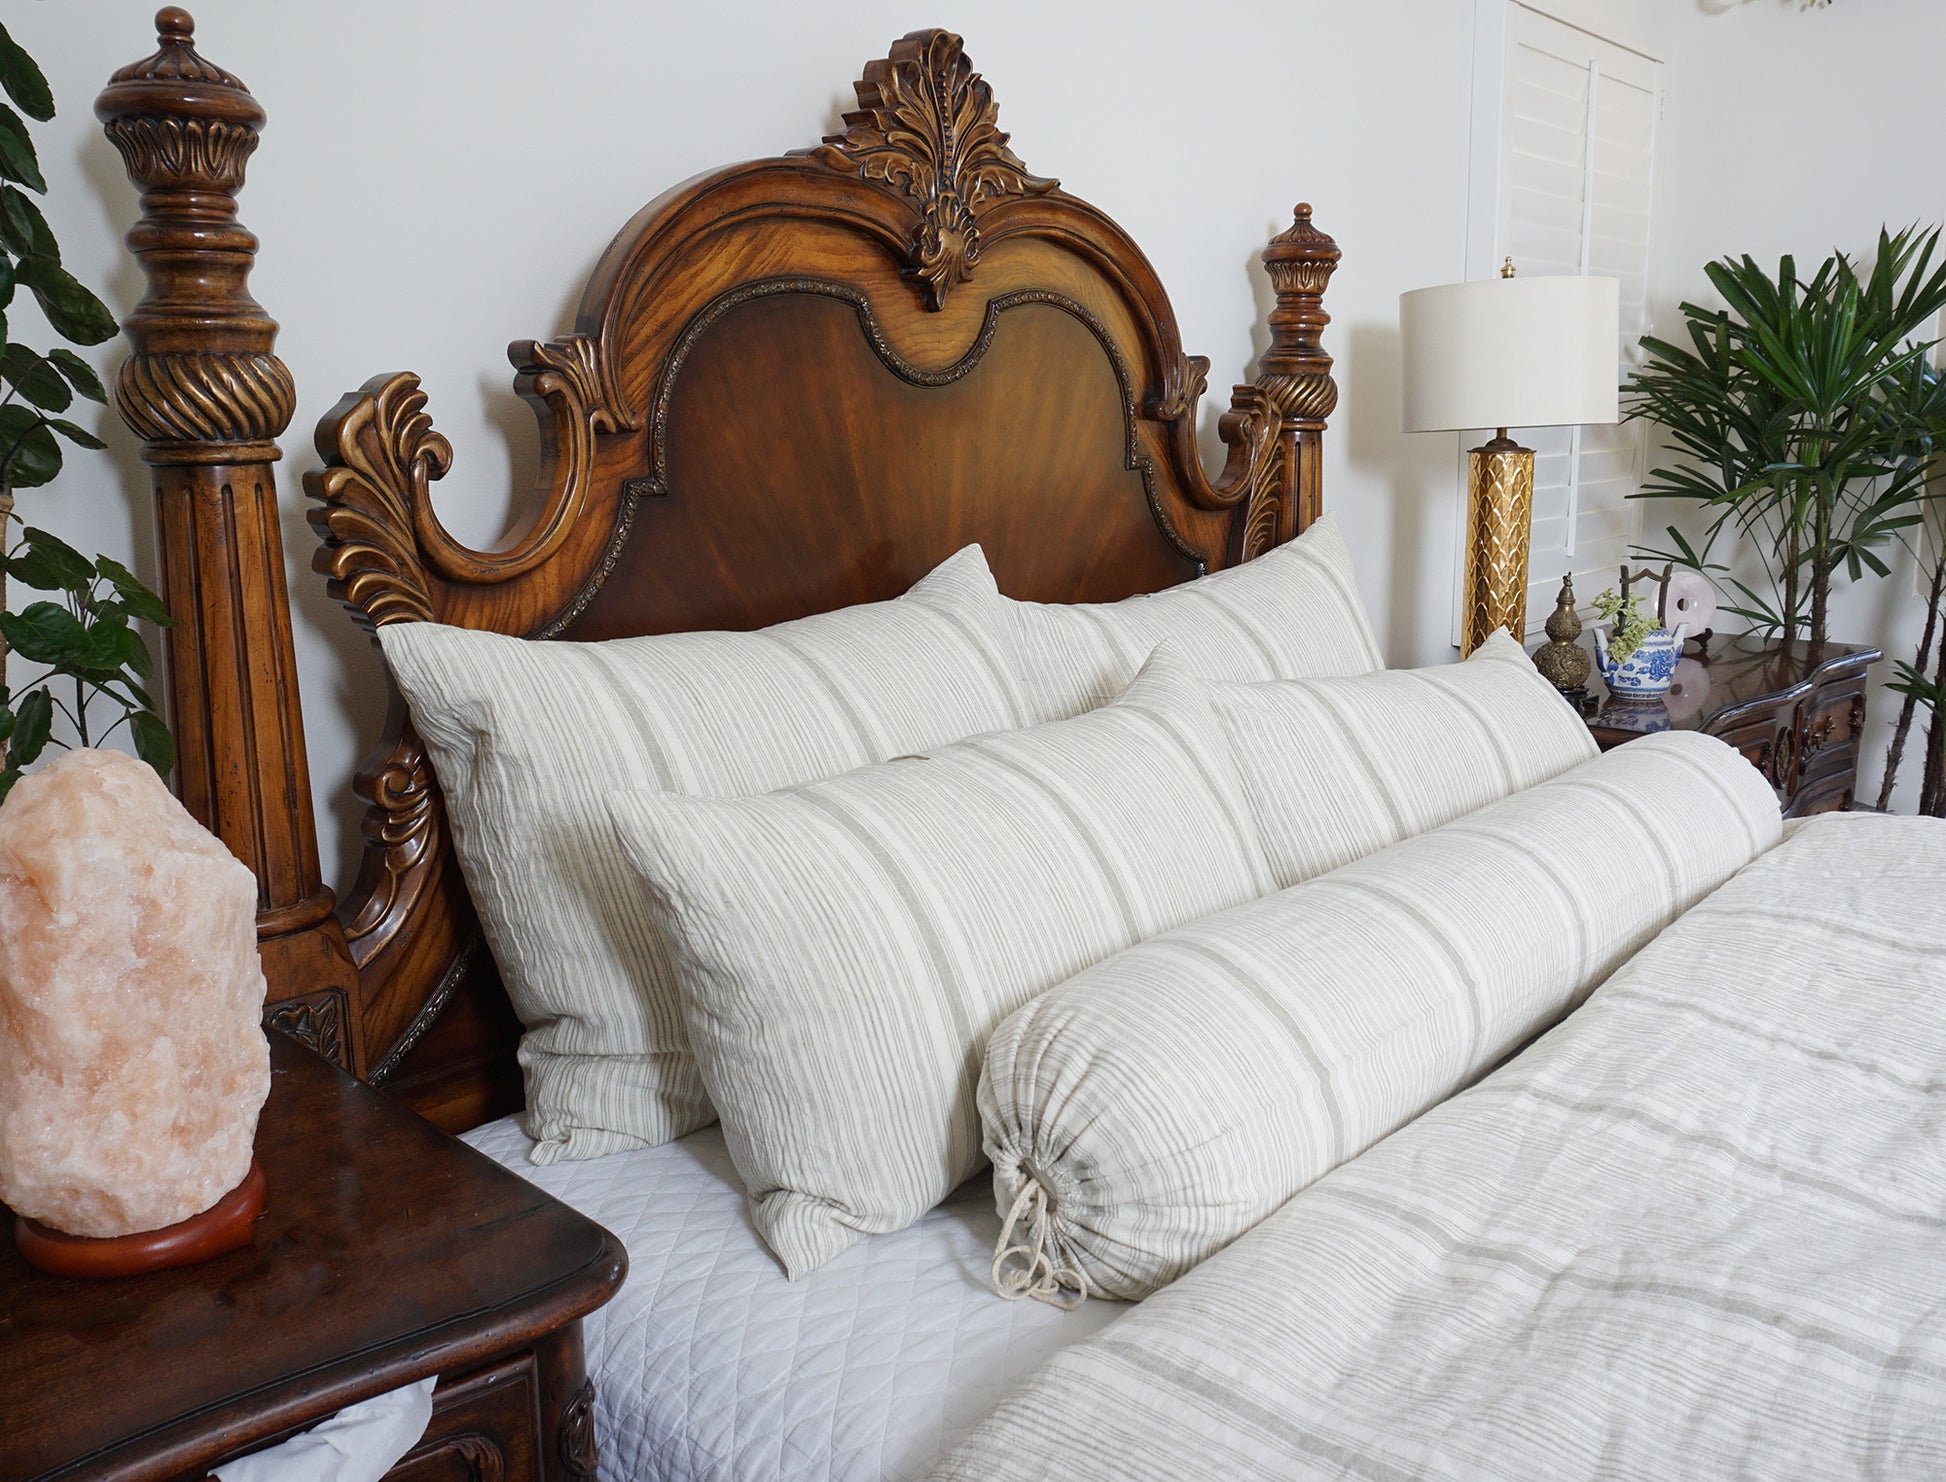 Uma Duvet Cover for bedding and sheets